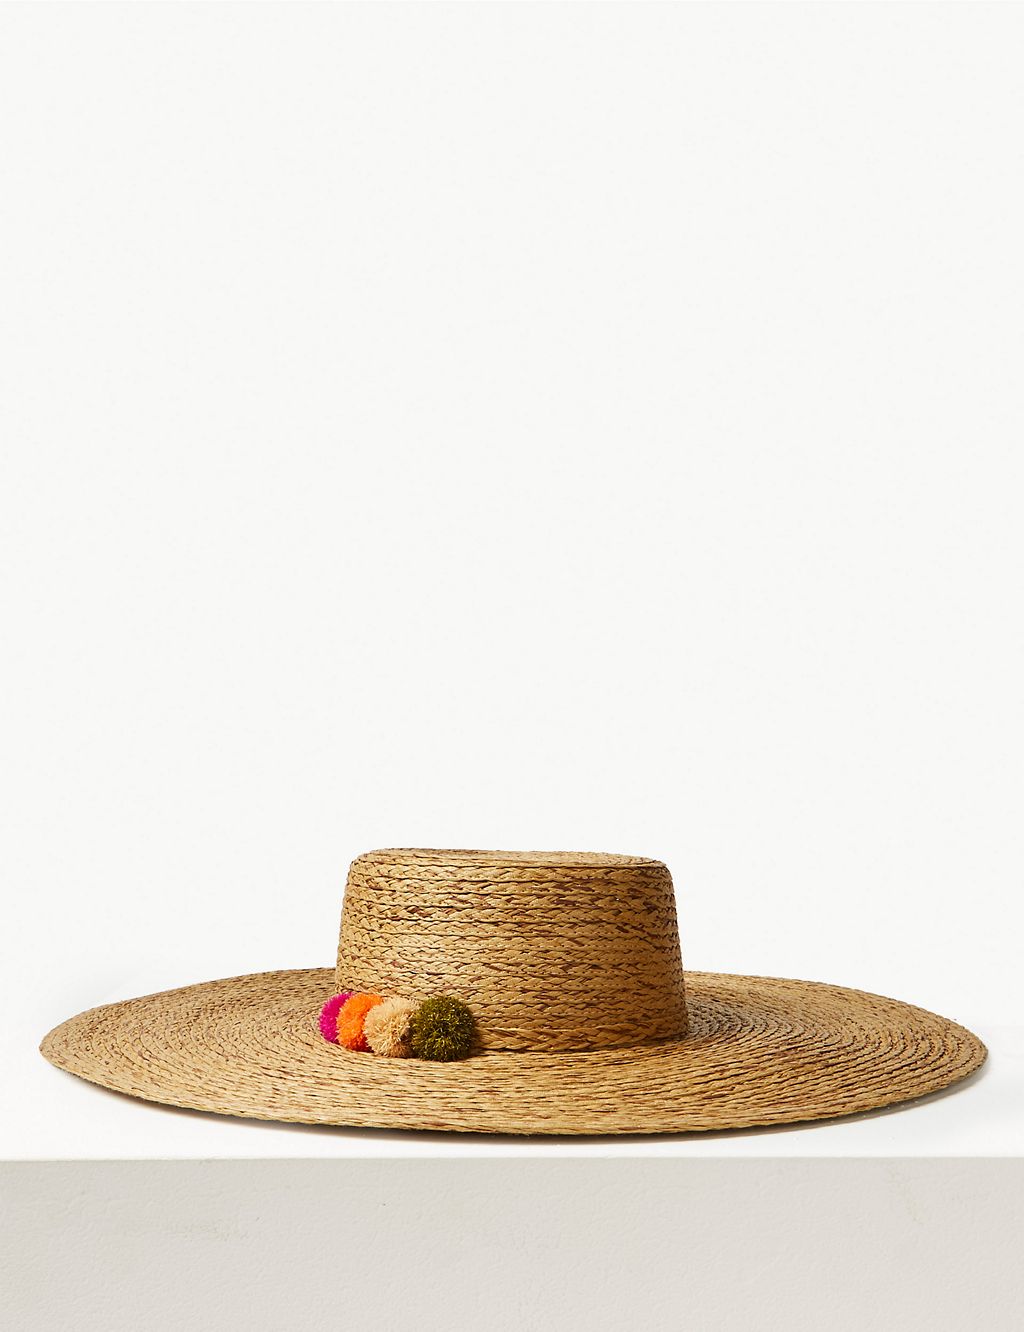 Brim Flat Top Sun Hat 2 of 2